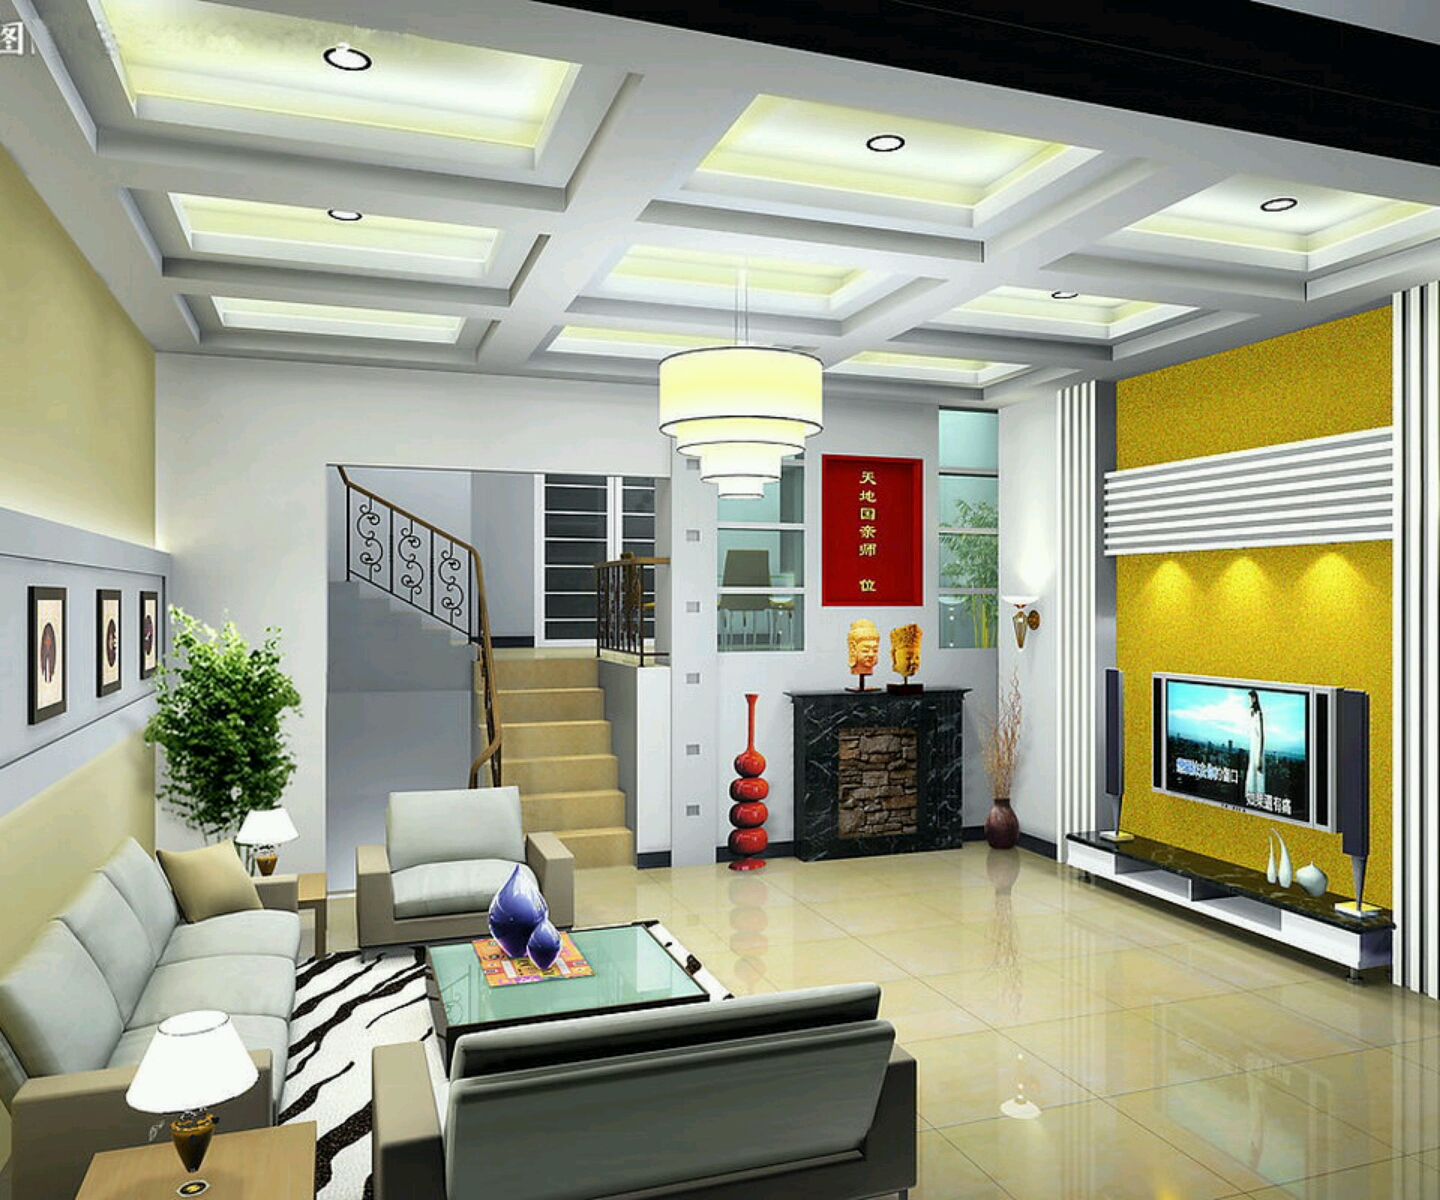 interior rumah minimalis 2014 gambar desain interior rumah minimalis ...